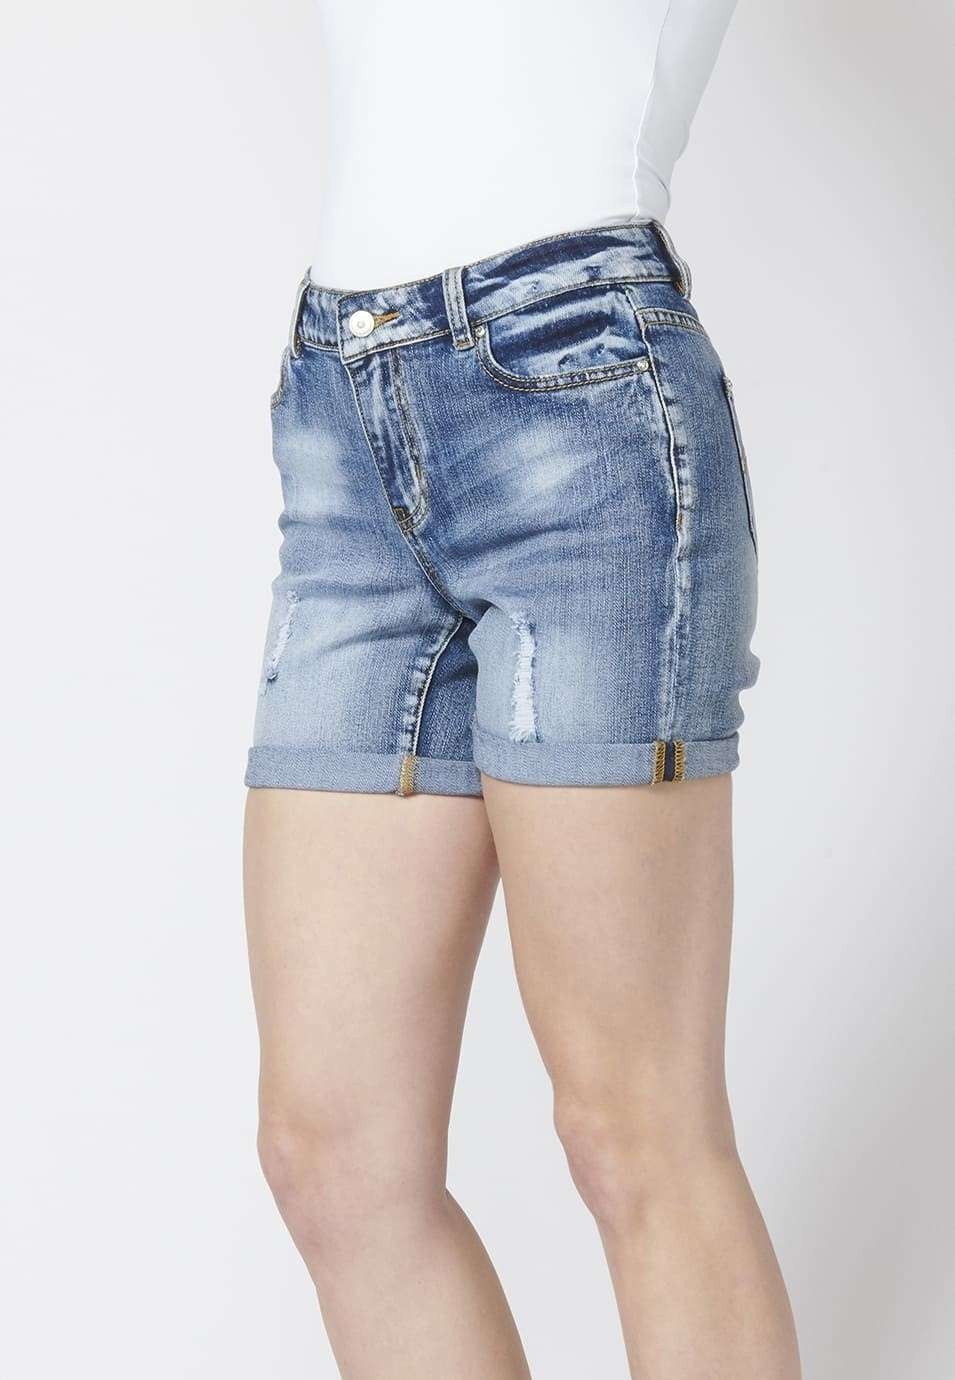 Pantalons curts dona denim short texà elàstic a sobre genoll detalls amb trencats